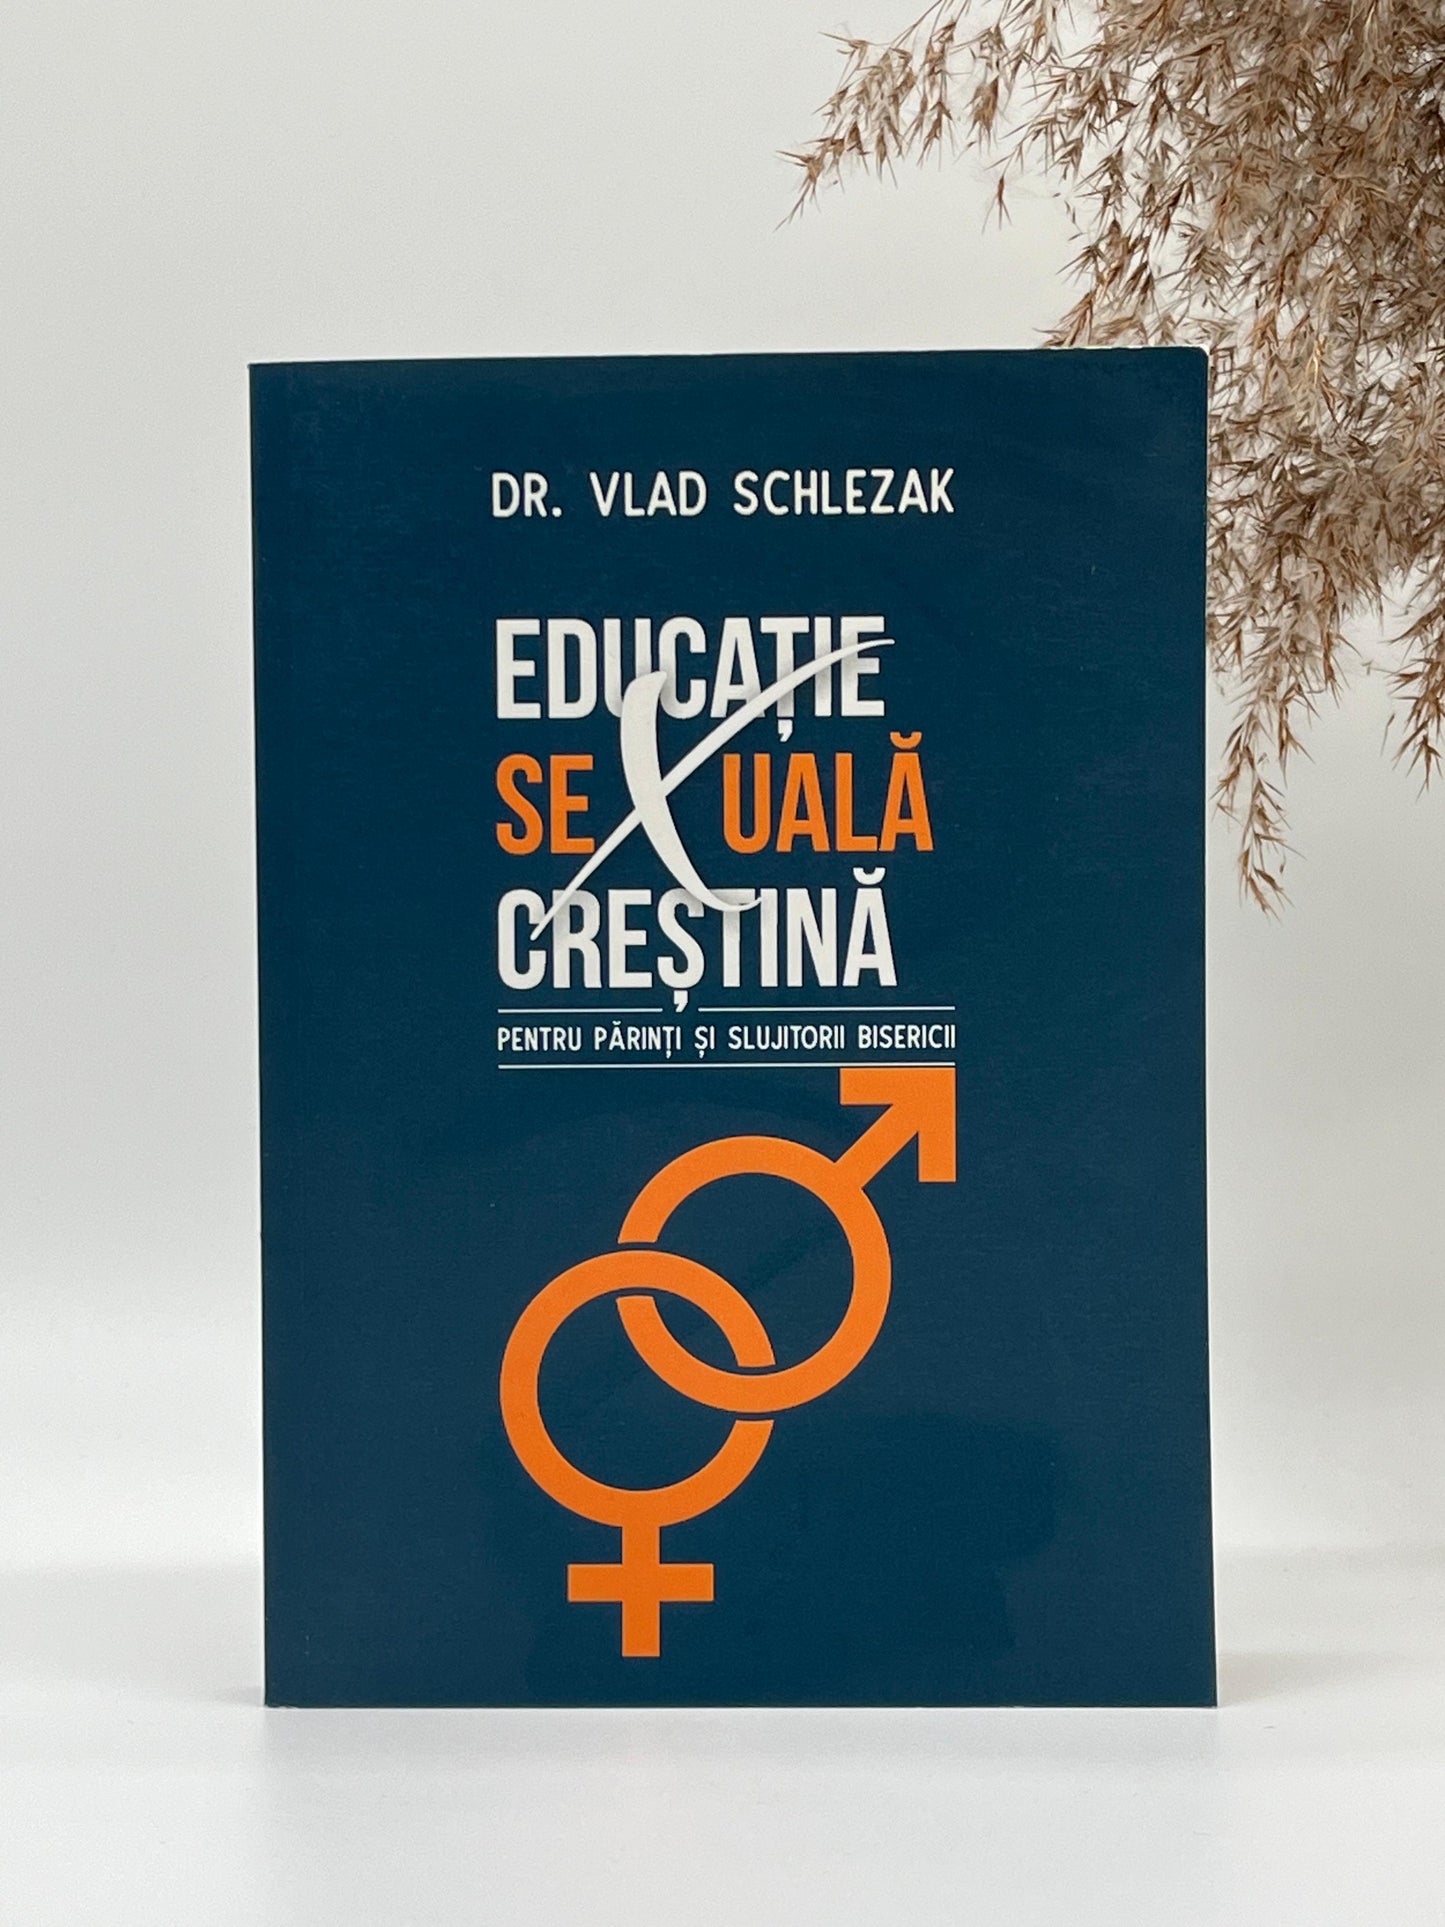 Educație sexuală creștină pentru părinți și slujitorii bisericii -
Dr. Vlad Schlezak